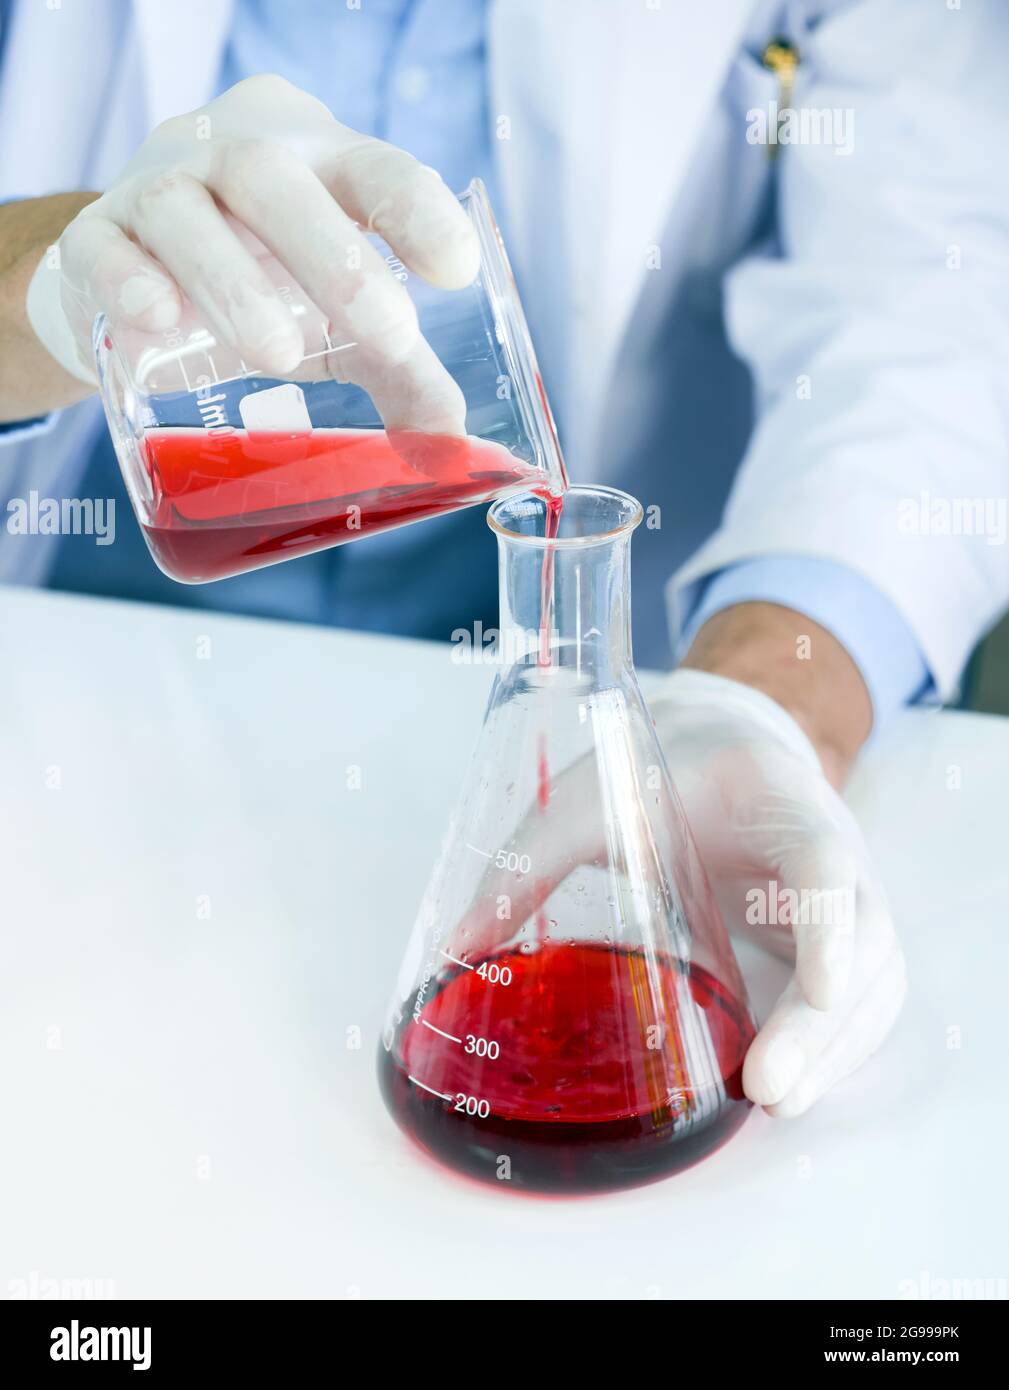 Wissenschaftler im Gewand und Schutzhandschuh mischen vorsichtig rote giftige Chemikalien aus Becher und Erlenmeyerkolben. Stockfoto